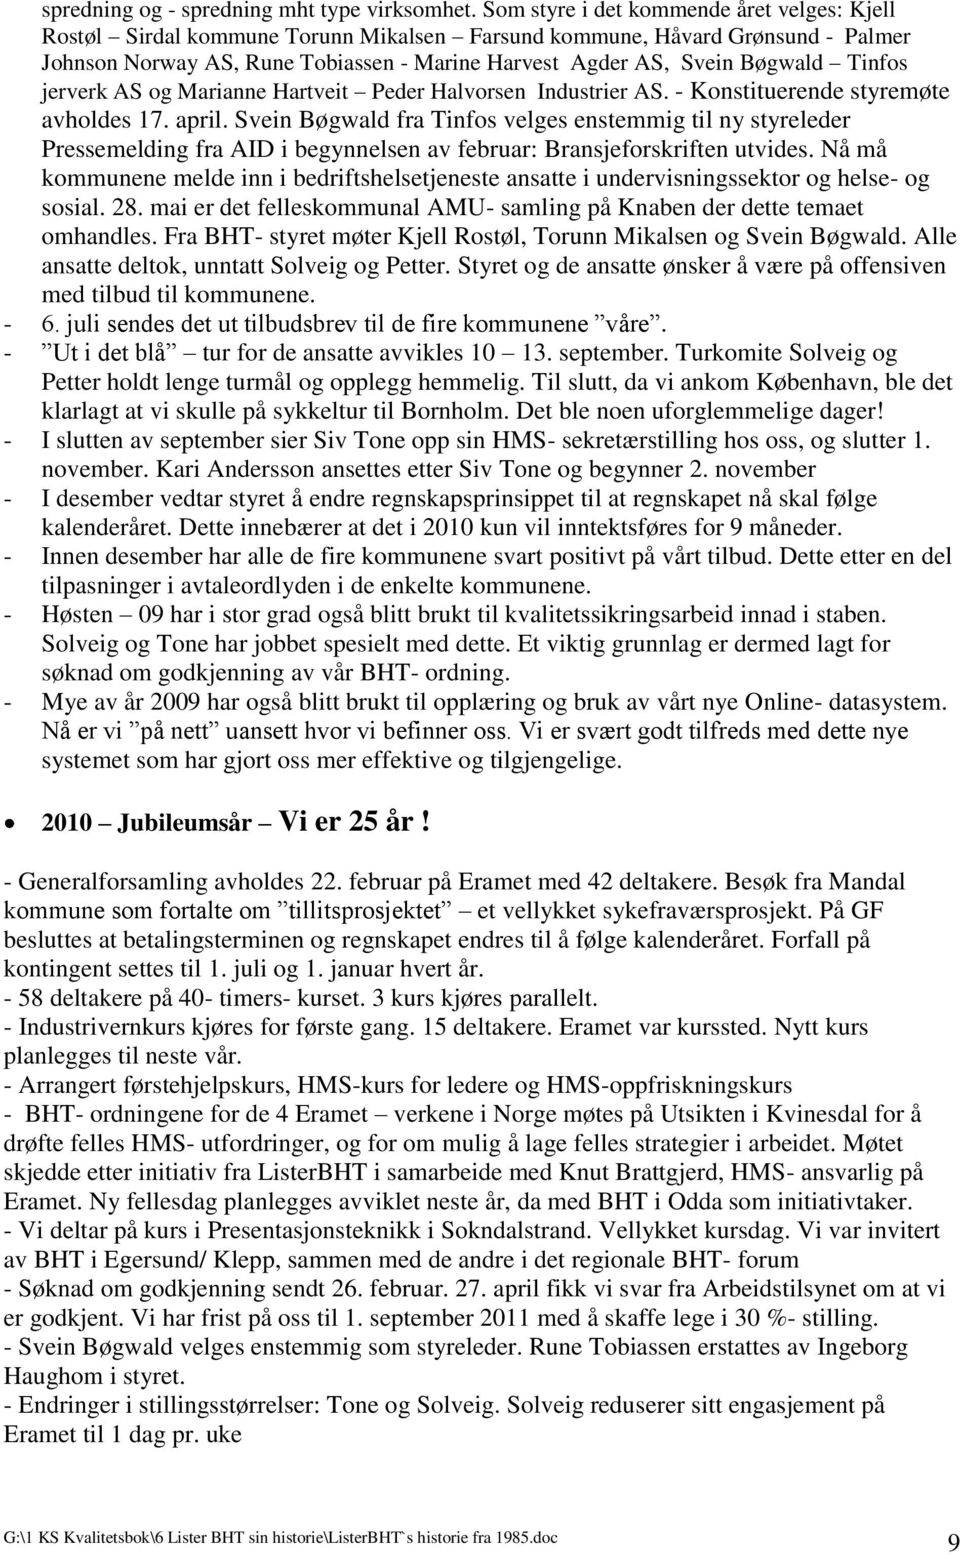 Tinfos jerverk AS og Marianne Hartveit Peder Halvorsen Industrier AS. - Konstituerende styremøte avholdes 17. april.